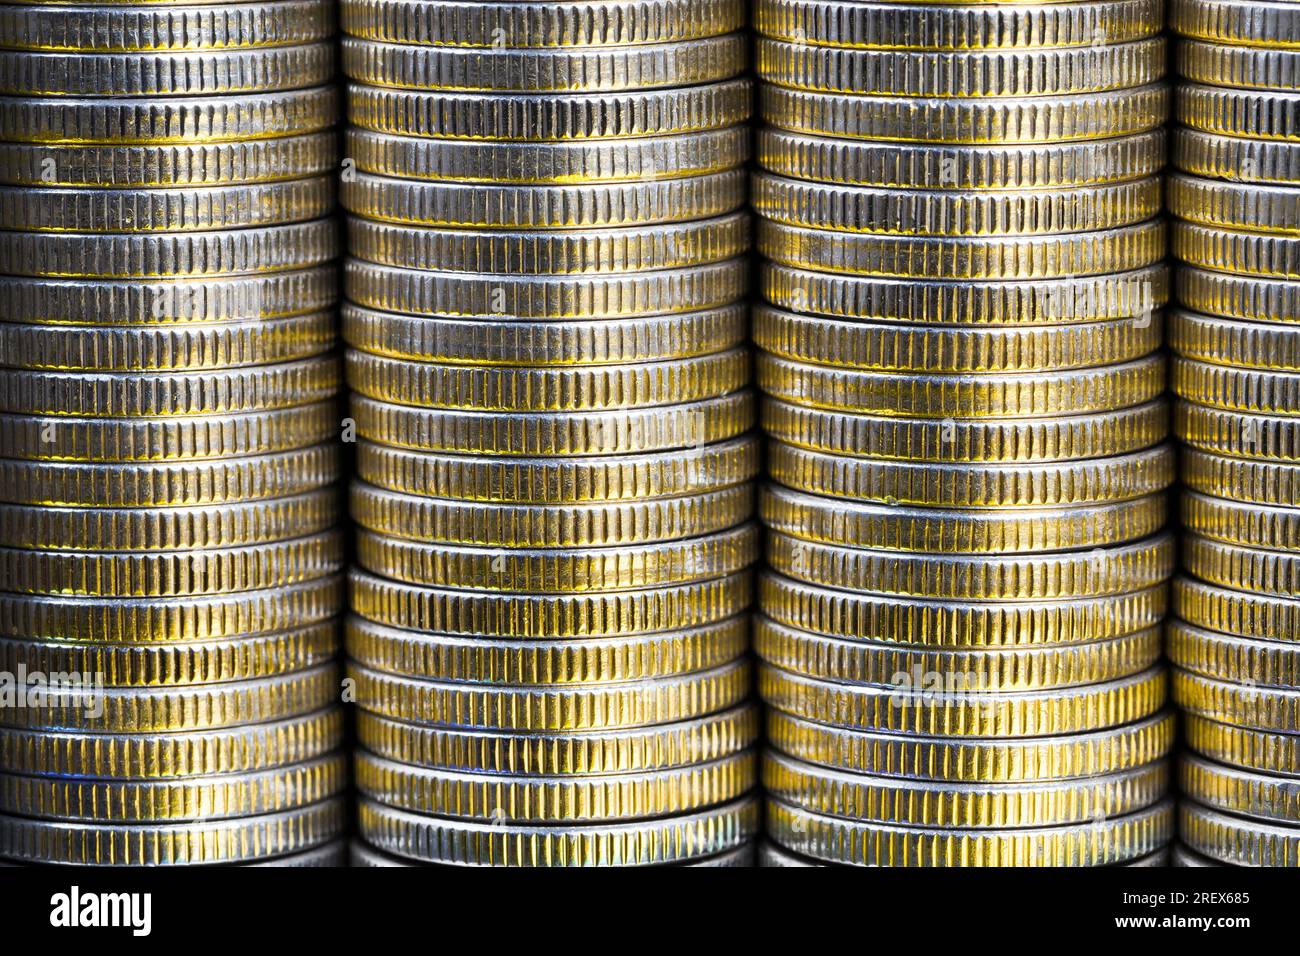 Viele runde Metallmünzen von silberner Farbe beleuchtet mit goldener Farbe, gesetzliches Zahlungsmittel, das für Zahlungen im Staat verwendet wird, schöne Münzen Nahaufnahme mit Stockfoto